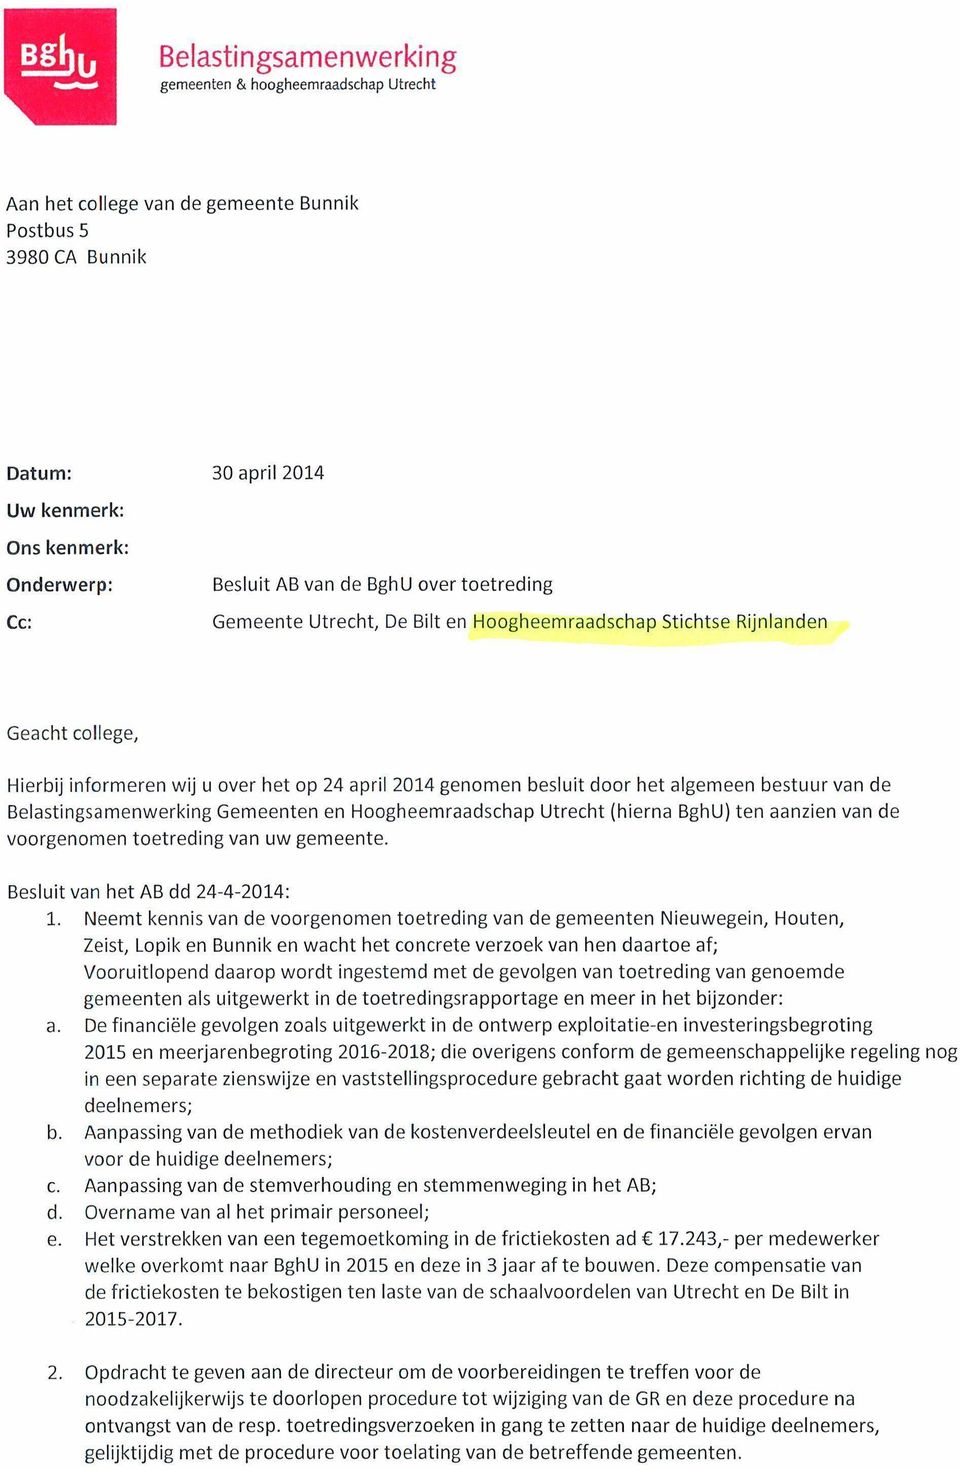 Hierbij informeren wij u over het op 24 april 2014 genomen besluit door het algemeen bestuur van de Belastingsamenwerking Gemeenten en Hoogheemraadschap Utrecht (hierna BghU) ten aanzien van de